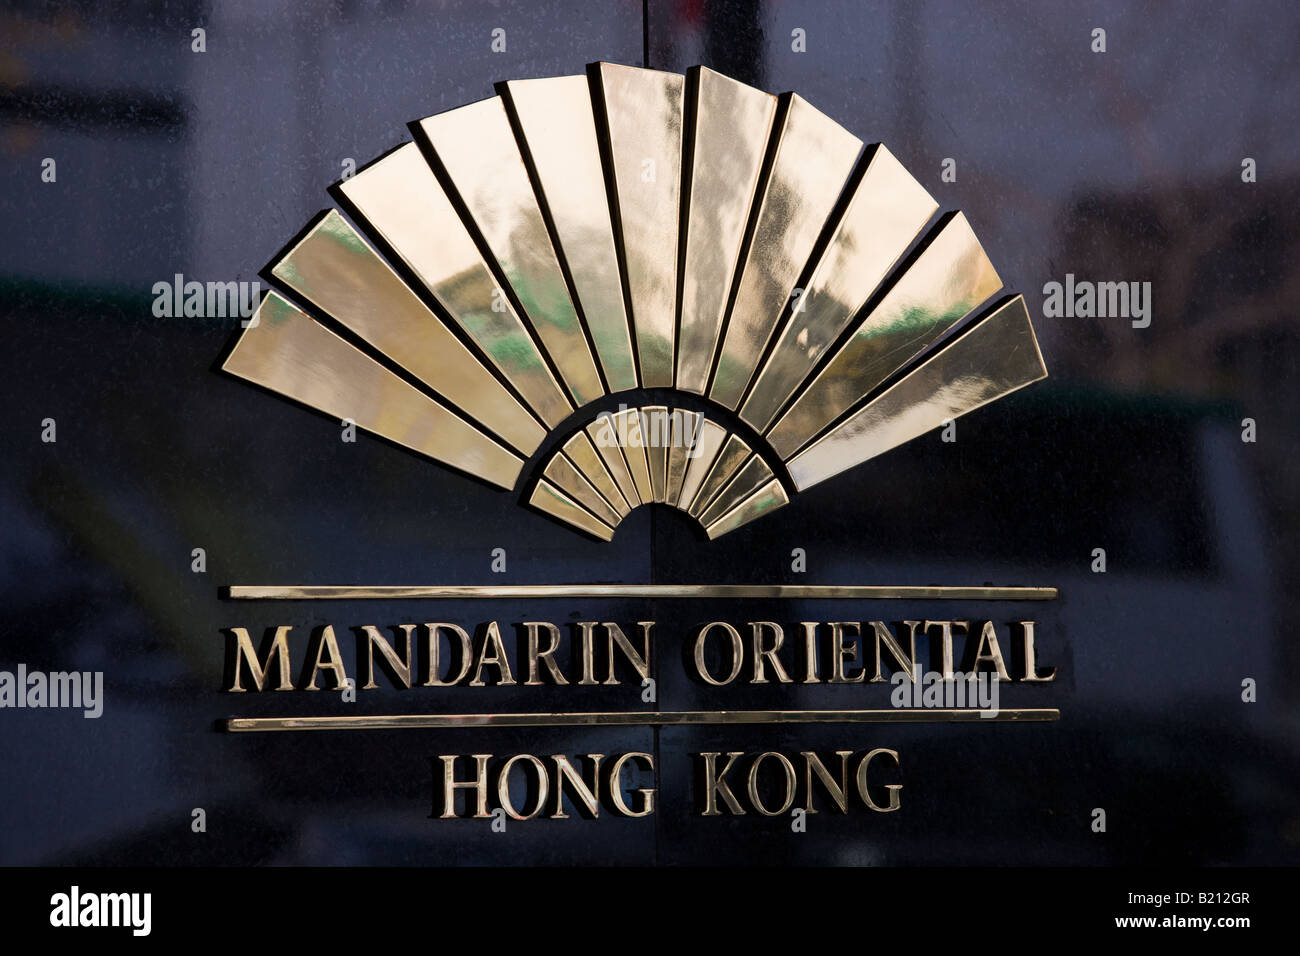 Mandarin Oriental Hotel Sign Hong Kong China Stock Photo